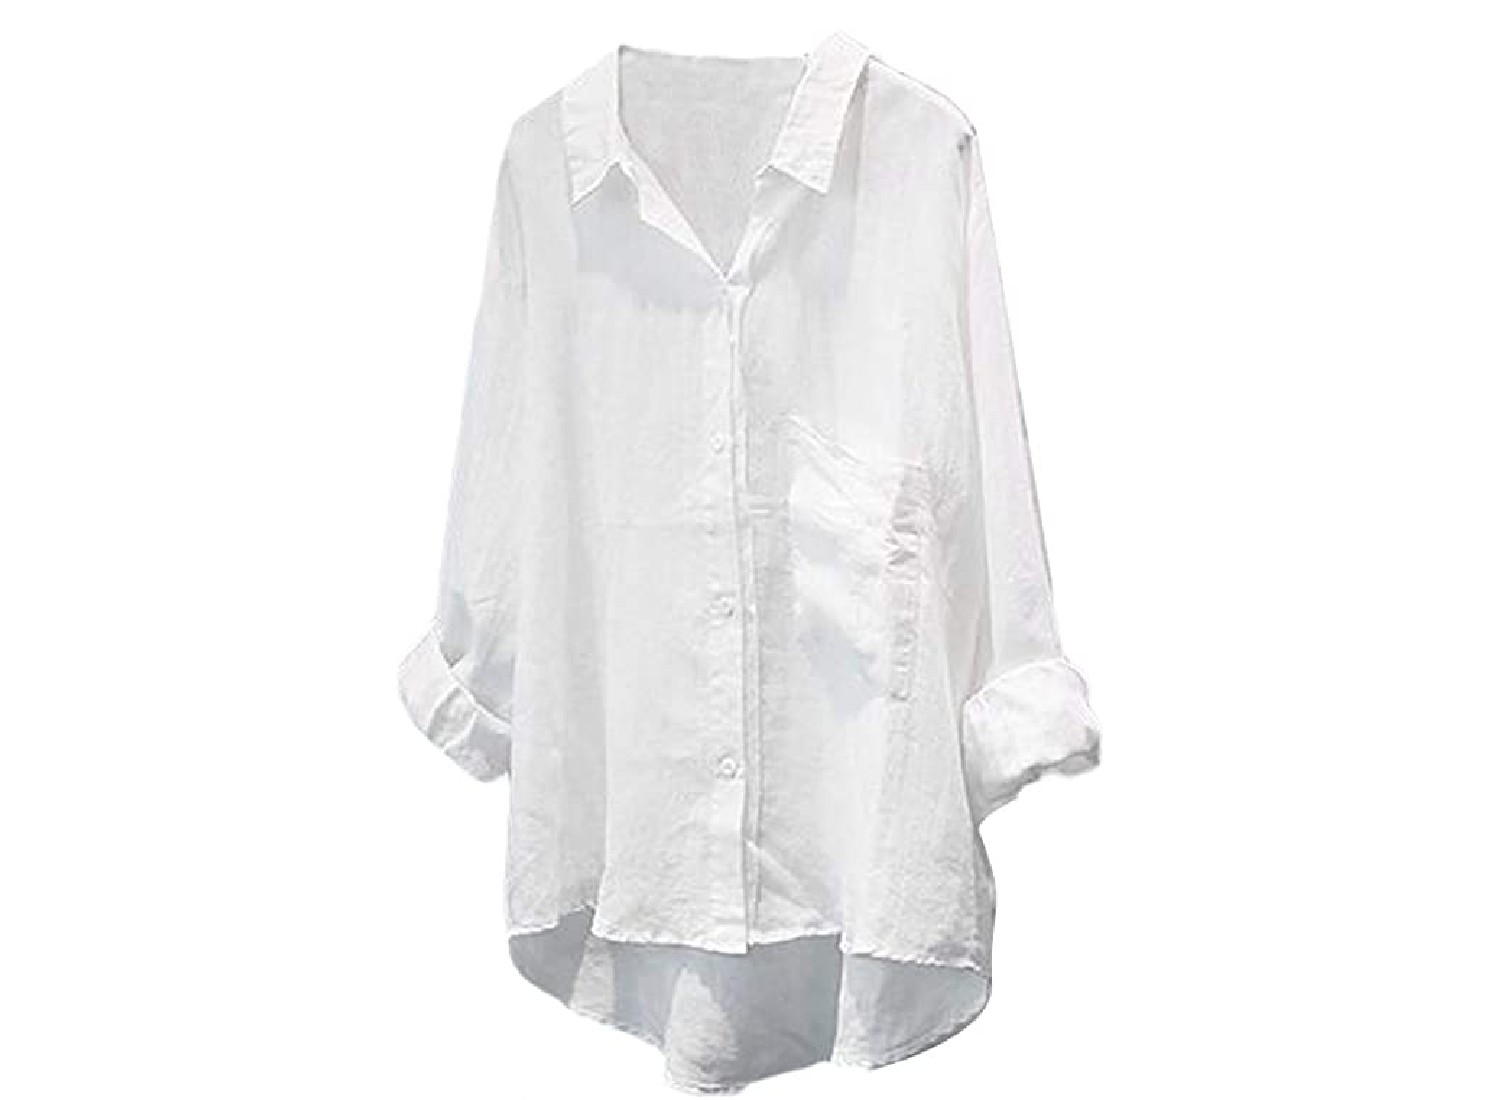 A flowy white blouse.